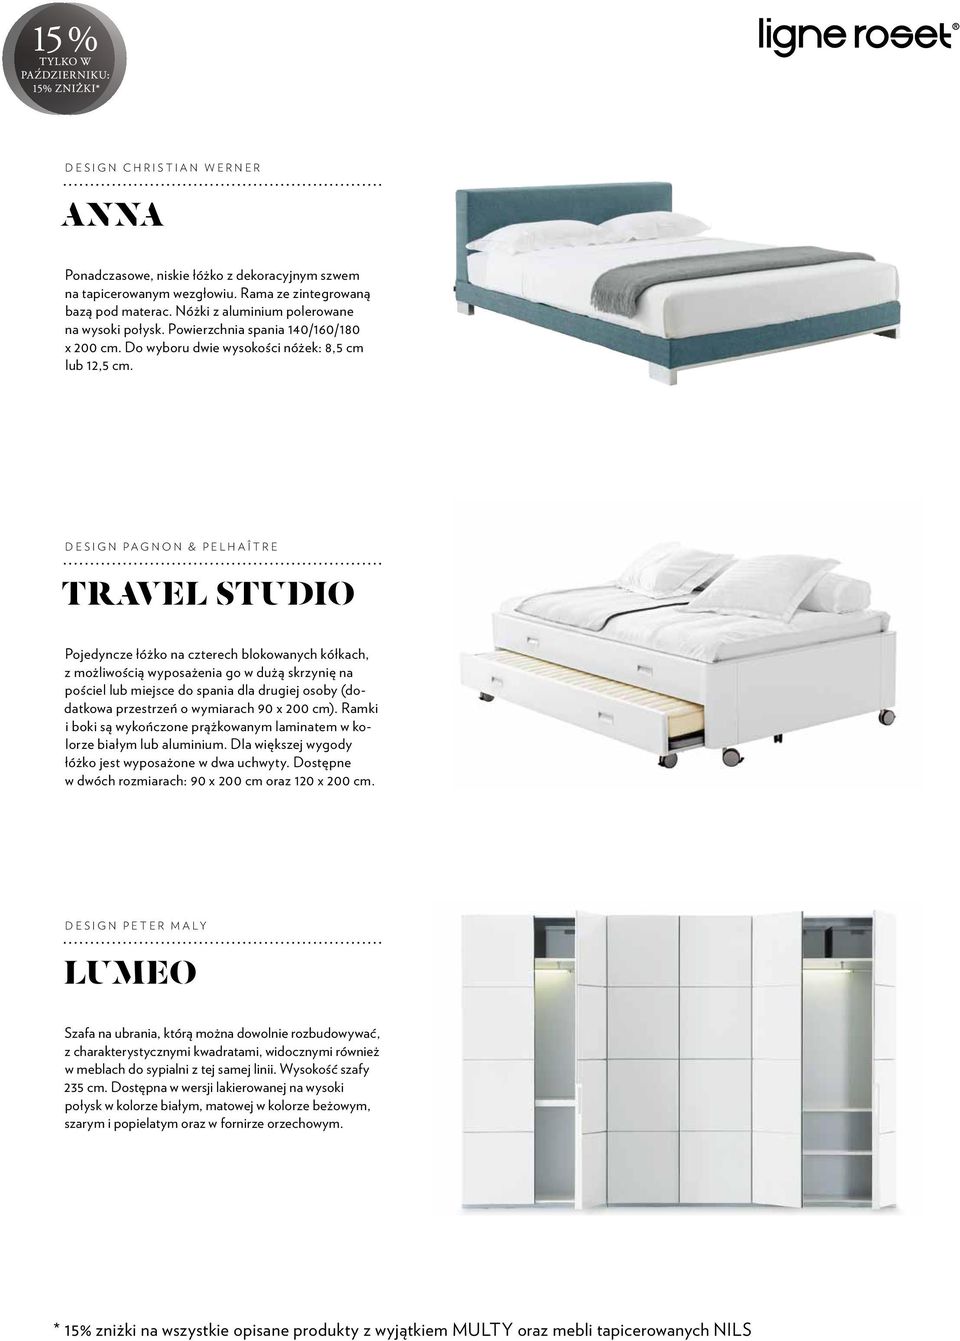 Design Pagnon & Pelhaître TRAVEL STUDIO Pojedyncze łóżko na czterech blokowanych kółkach, z możliwością wyposażenia go w dużą skrzynię na pościel lub miejsce do spania dla drugiej osoby (dodatkowa